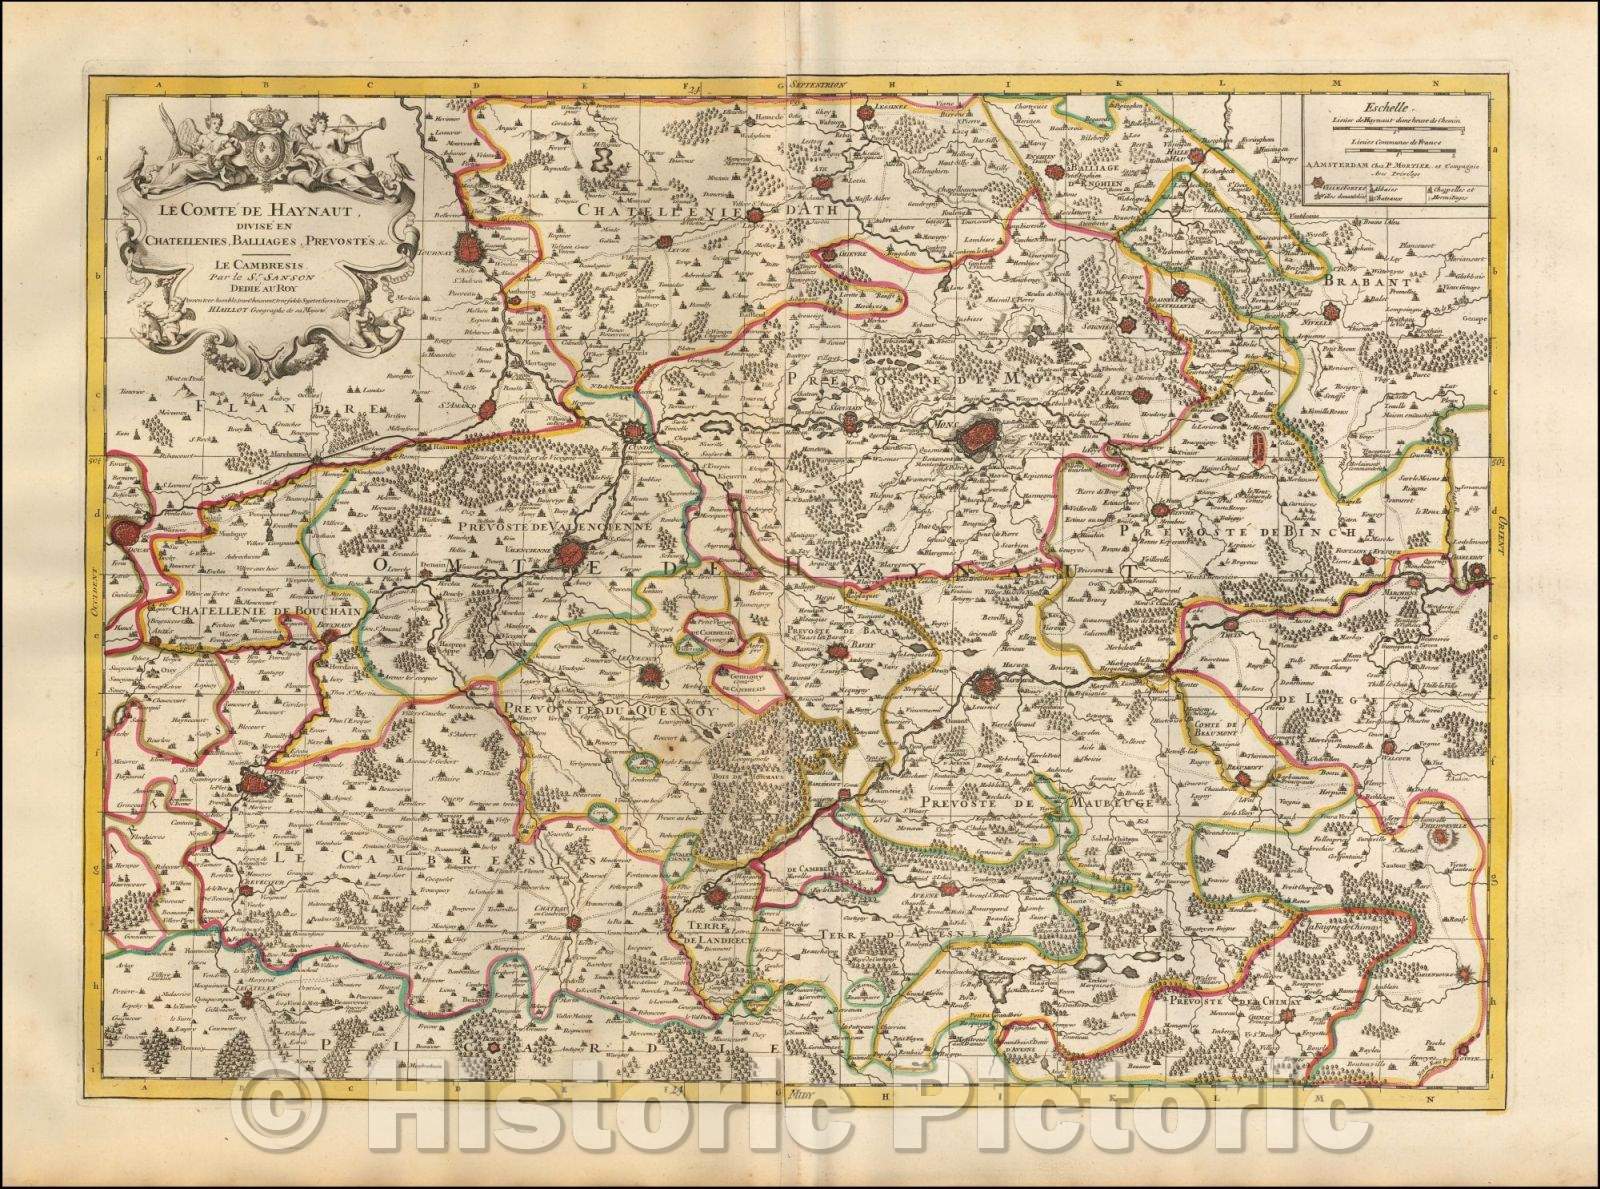 Historic Map - Le Comte de Haynaut, Divise en Chatellenies, Balliages, Prevostes & c. - Le Cambresis/Map of the French Hainaut Region, 1690, Pieter Mortier - Vintage Wall Art